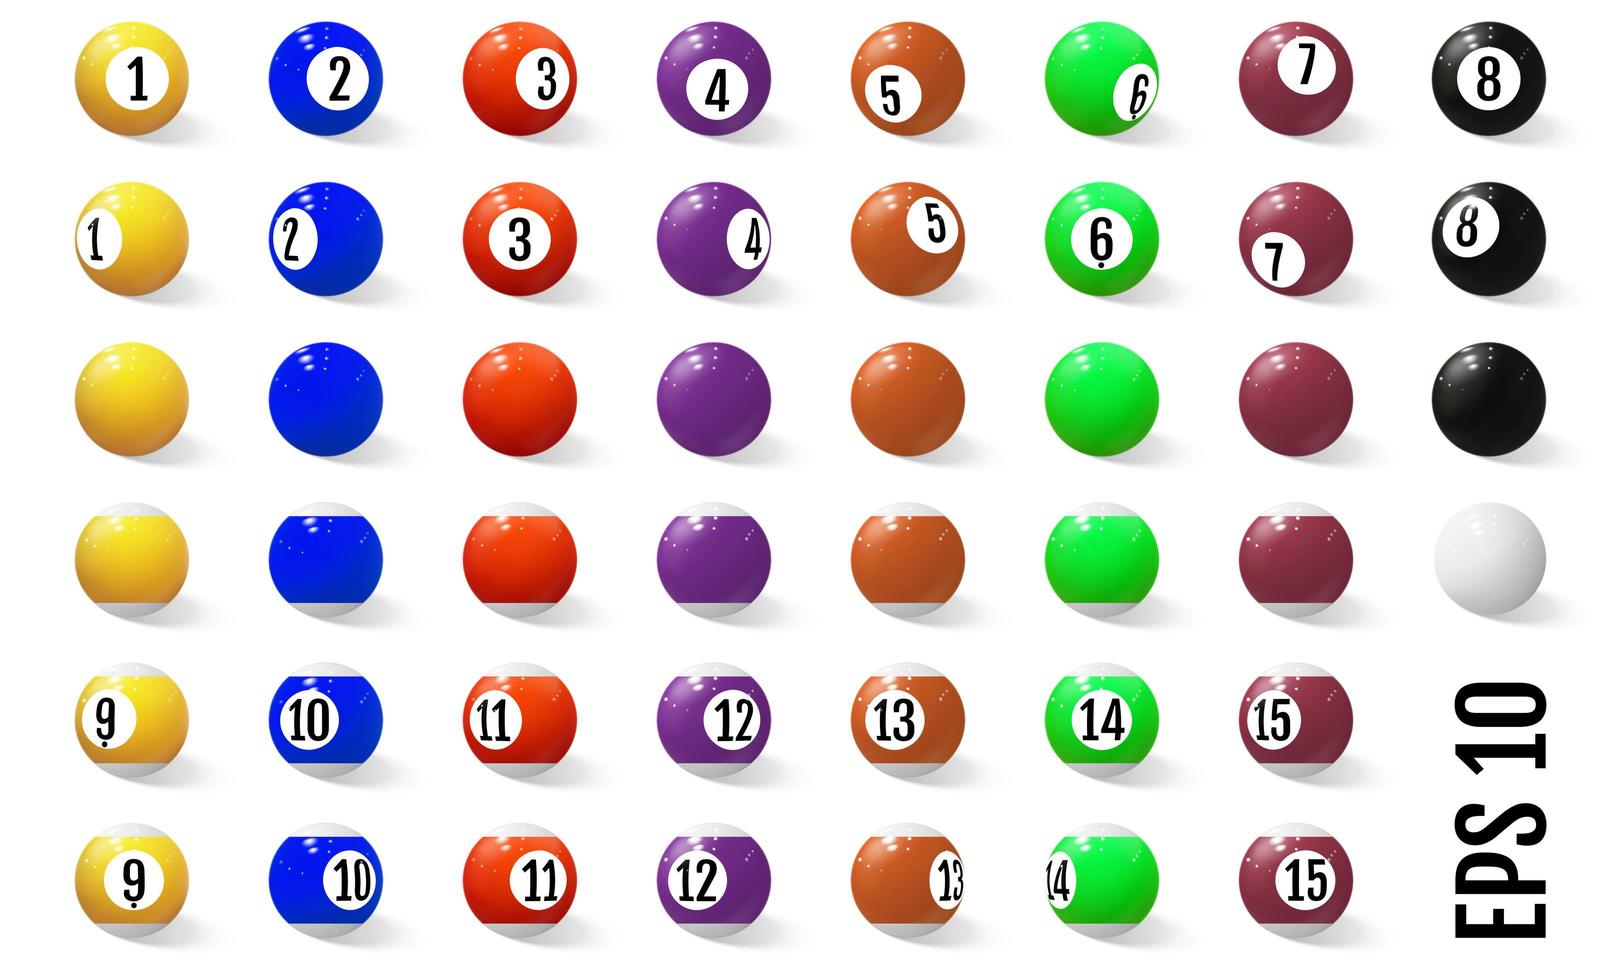 bolas de bilhar, sinuca ou sinuca com conjunto de números vetor